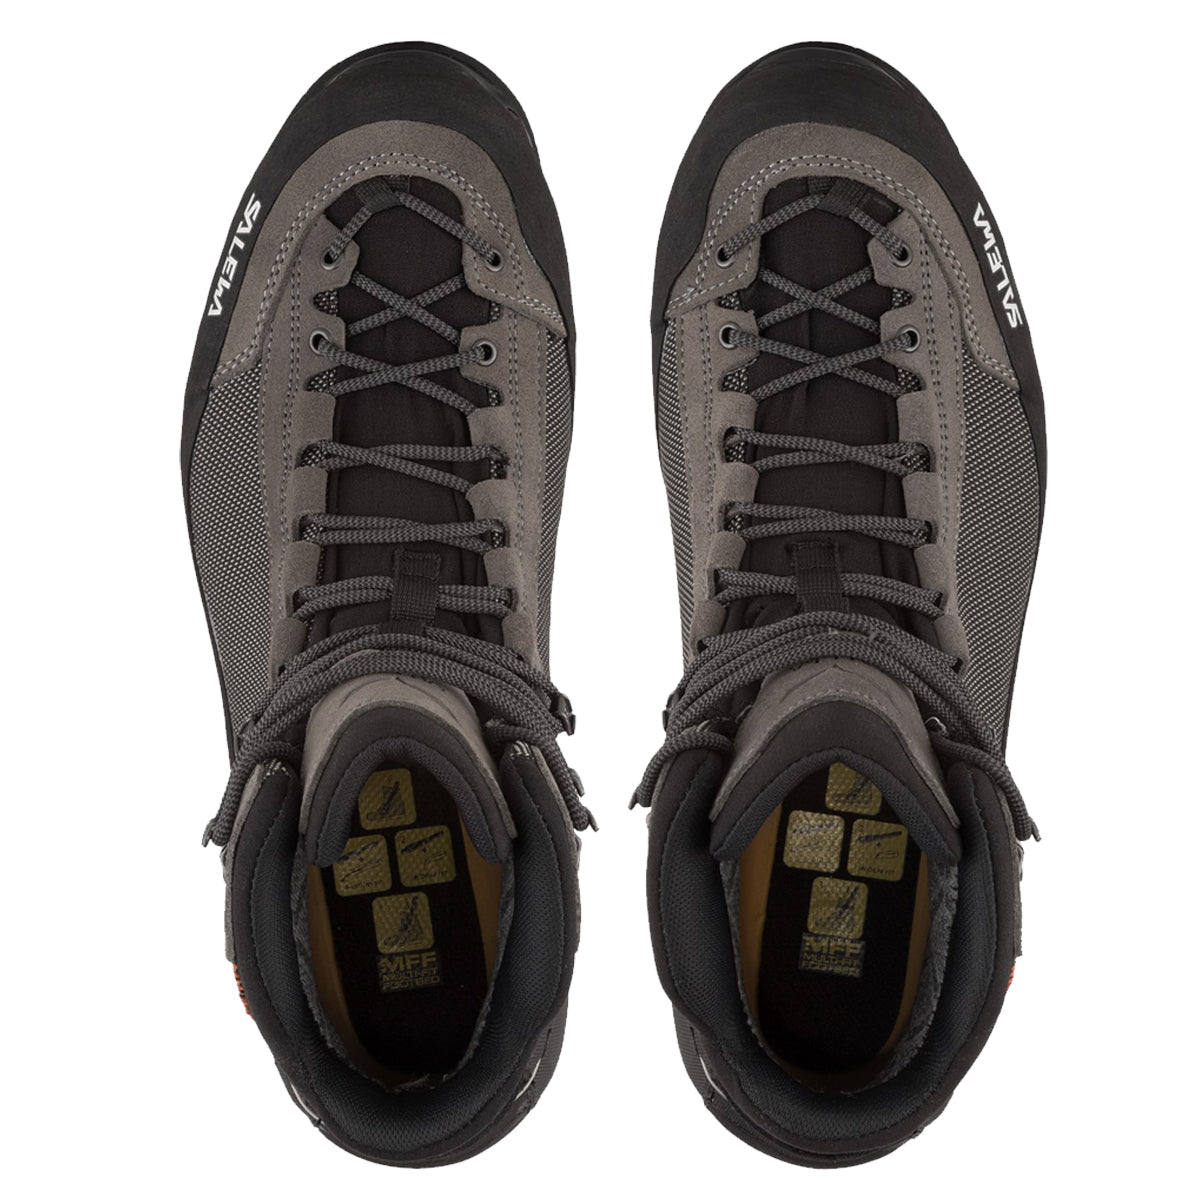 LV SKATE Swarovski Black Trainer Sneaker (Review) + ON FOOT 